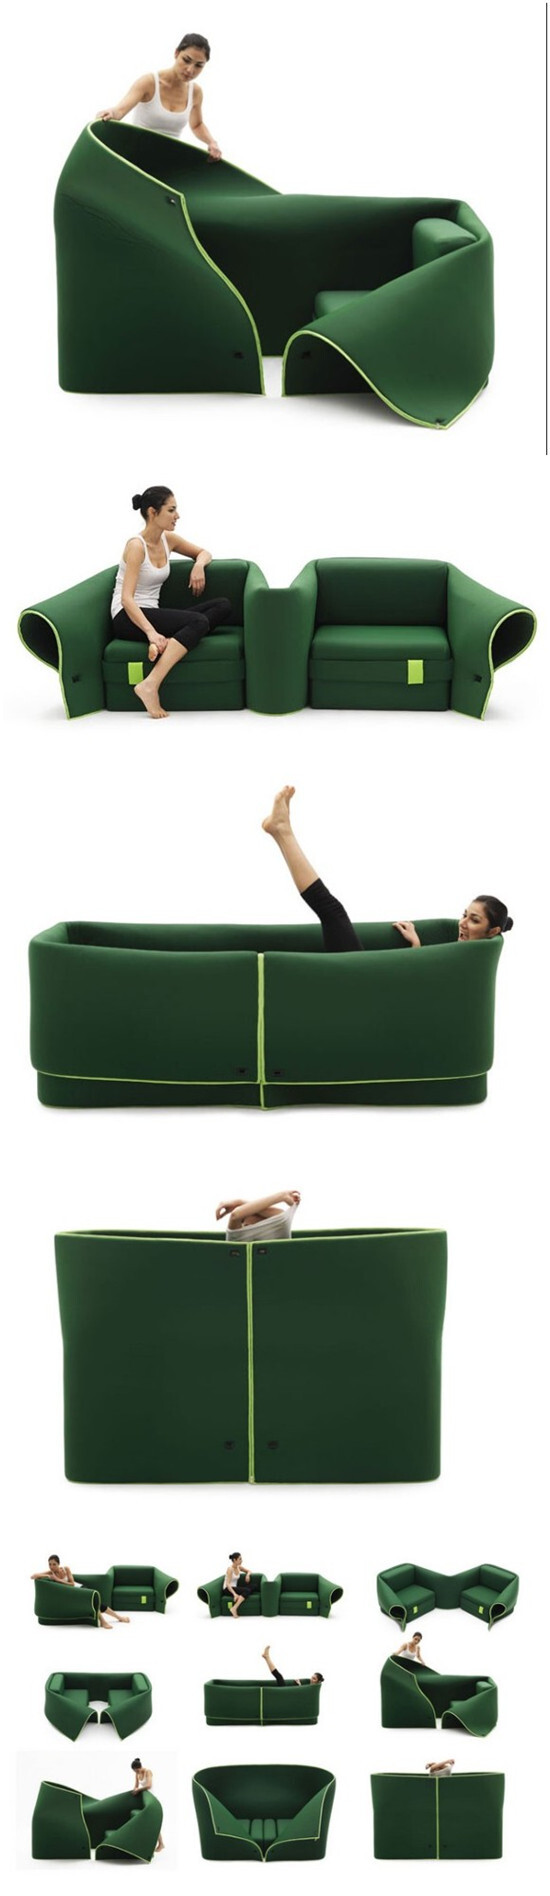 我就喜欢那些多功能的东西，比如昨天看到的那个可以随你怎么折腾的“变形软垫”，玩腻了，稍稍摆弄一下，又可以玩出新花样。这款由意大利设计师Emanuele Magini设计的“多功能沙发Sosia”，就属于那种任你“摆弄的家伙“。 Sosia通体的军绿色非常抢眼。它可以是两把椅子，让小夫妻舒舒服服地坐着；也可以是沙发，随你俩怎么玩儿，俺现在是一张沙发；它还可以是一张床，你俩就“躲”里面，拉上布帘，使劲儿疯。总之，你就算玩到世界末日去，Sosia也绝对不会吭声。当然，咱得高尚点，你瞧瞧，Sosia可变的外形和简单的构造，是不是在向我们传递了一个讯息：每个人在生活中都应该具备Sosia的这种变化能力，